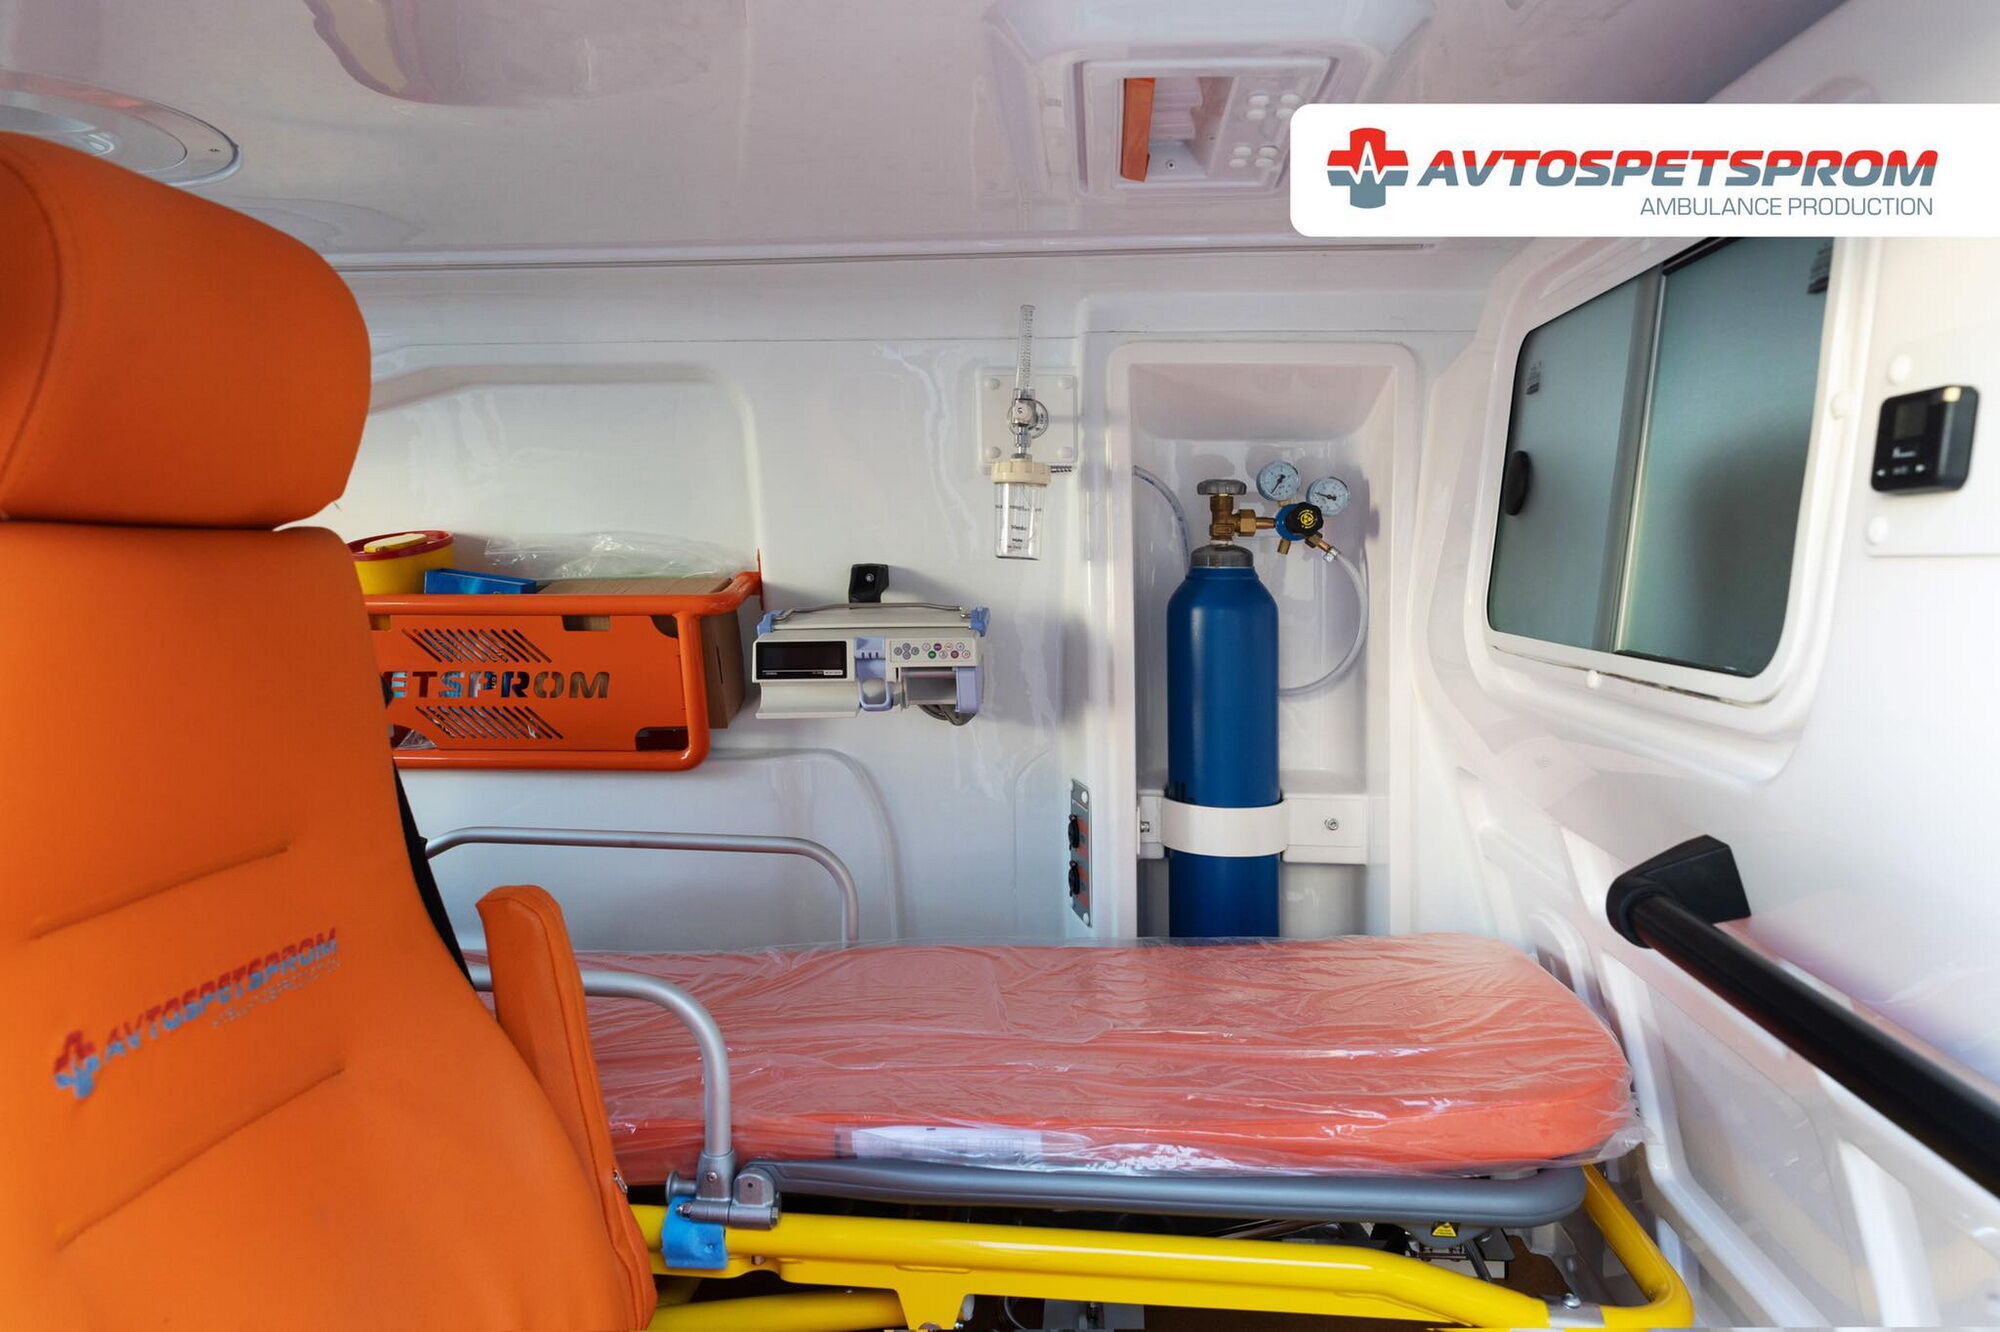 Все обладнання розташоване так, щоб забезпечити медпрацівникам швидкий та зручний доступ до нього